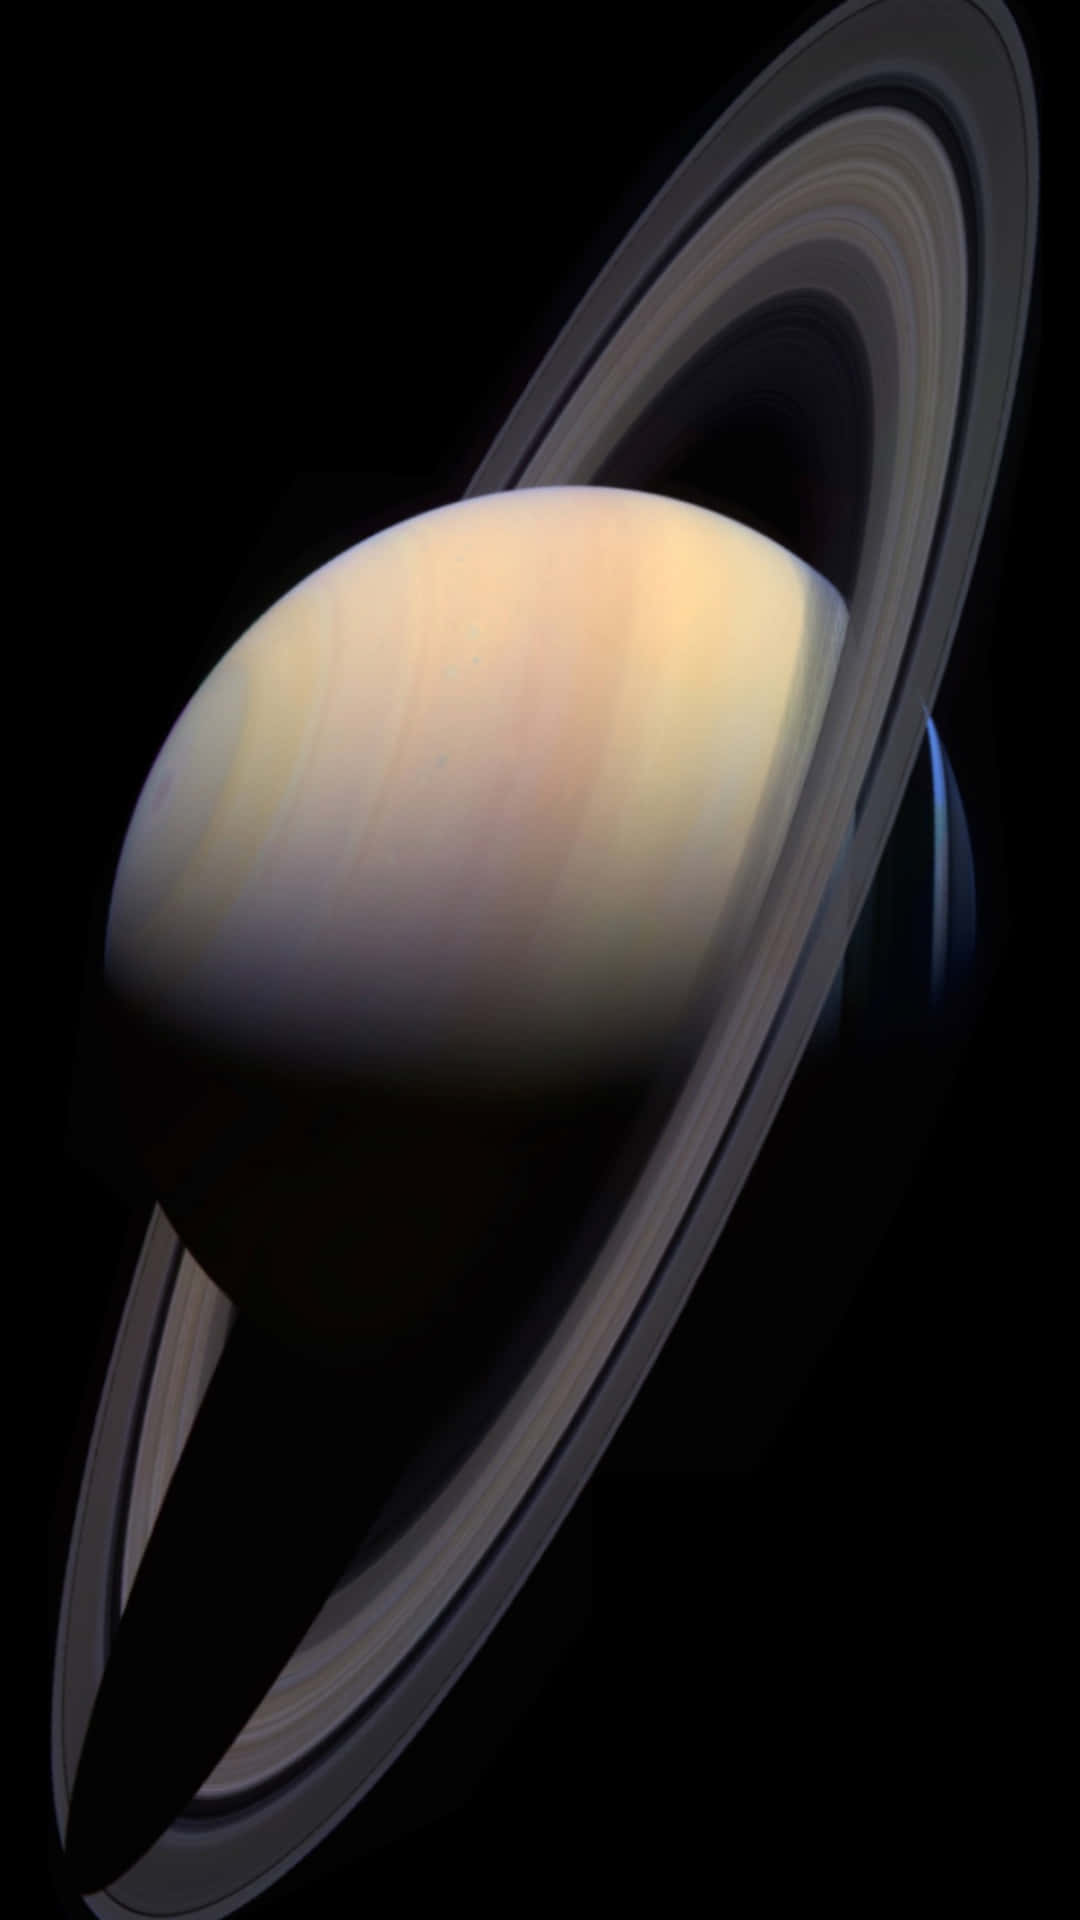 Impresionantevista De Saturno Y Sus Anillos